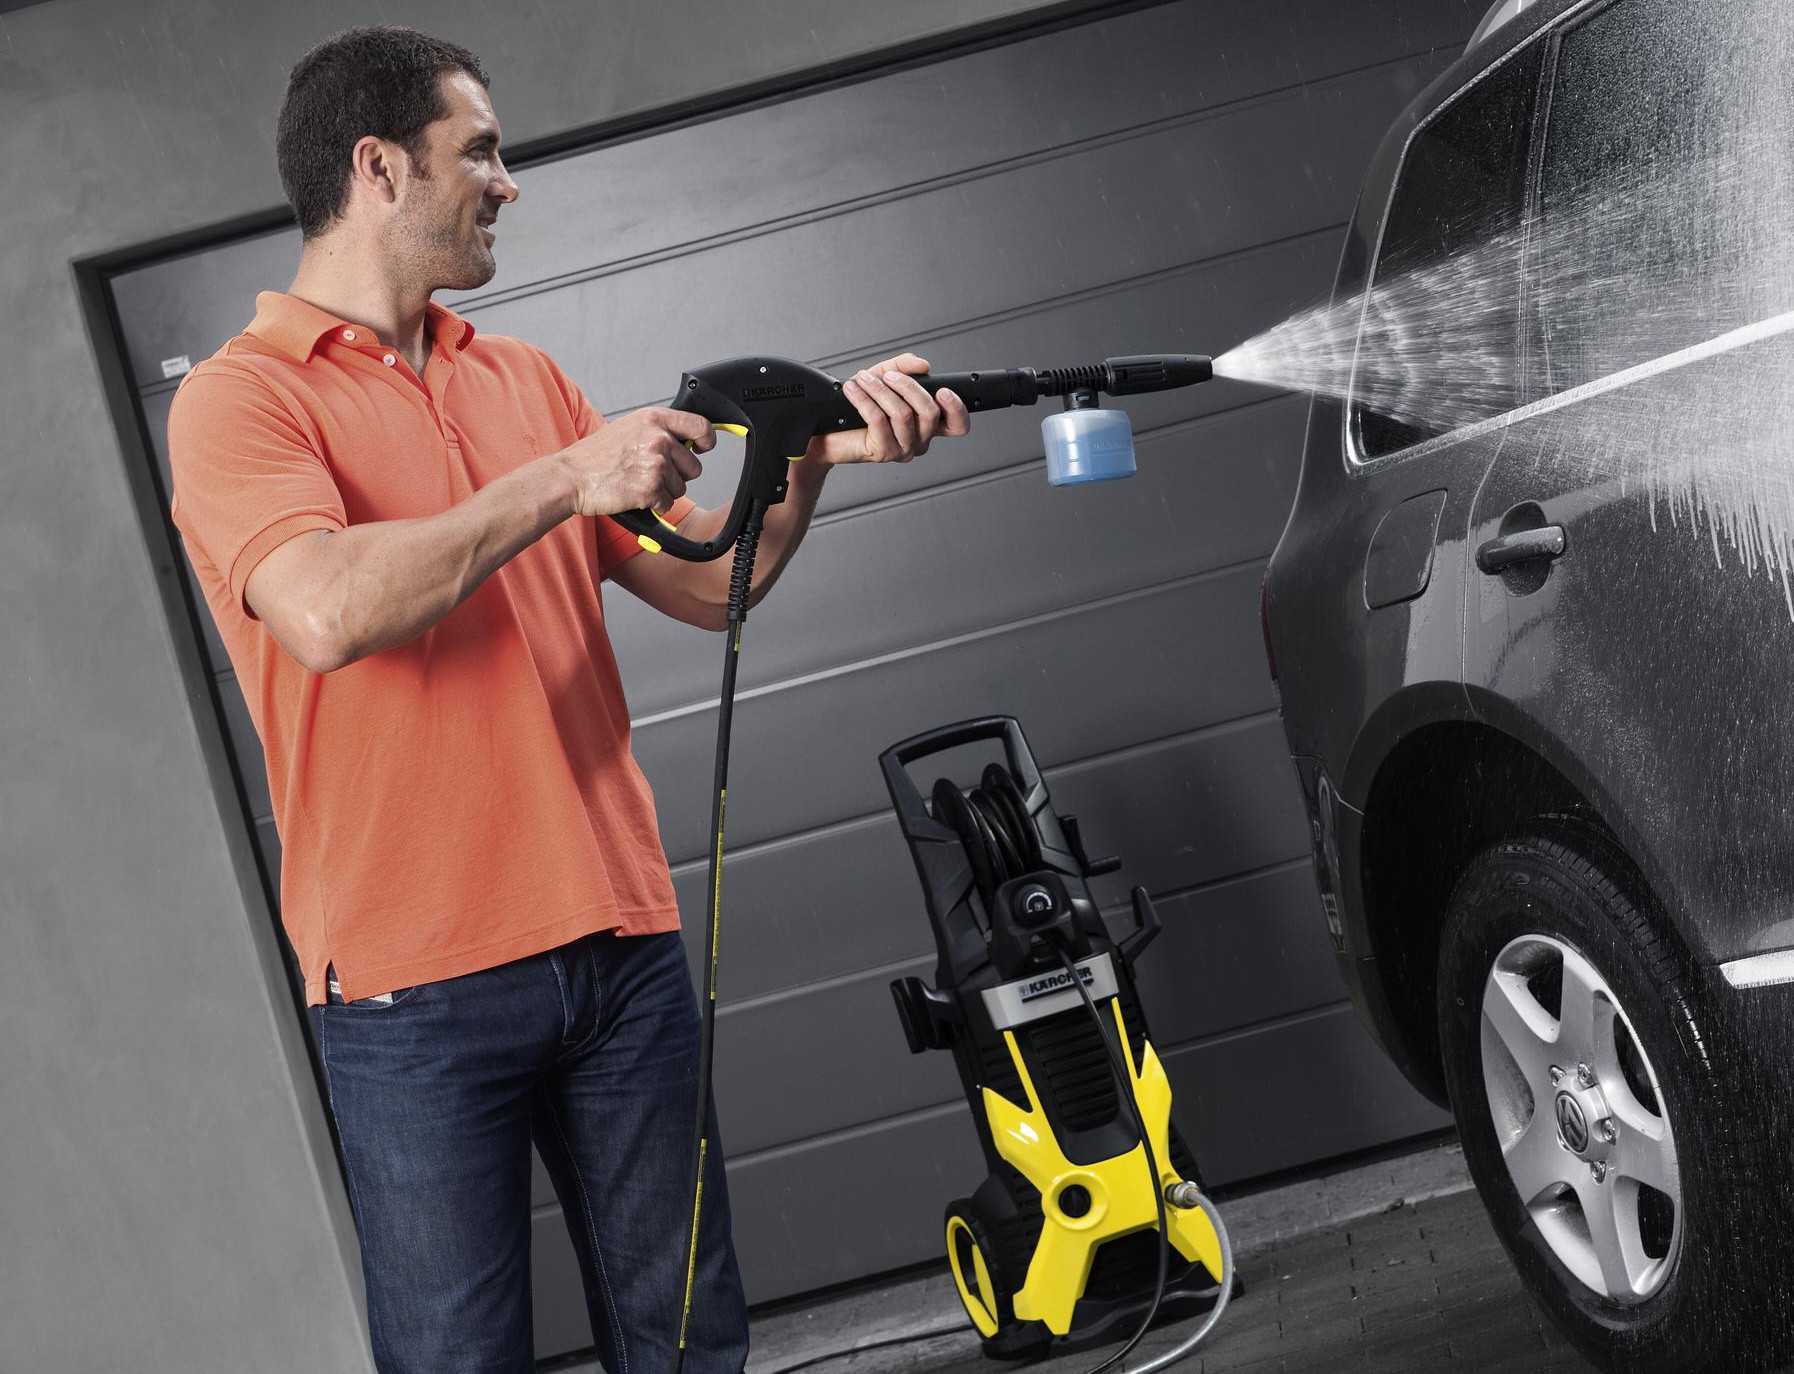 Керхер для мытья автомобиля: плюсы и минусы, как выбрать